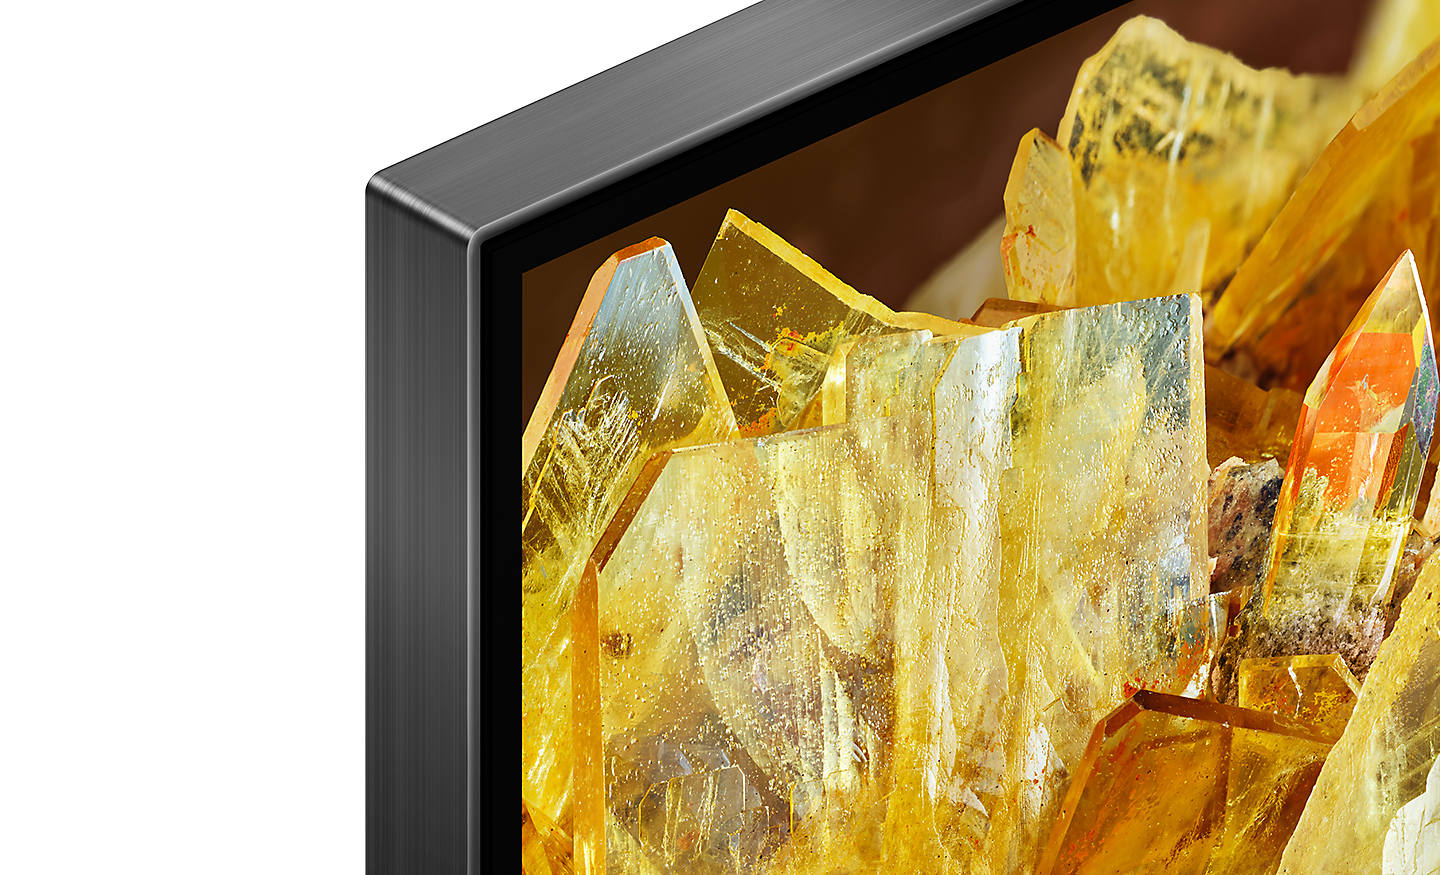 Canto da televisão que mostra cristais dourados no ecrã